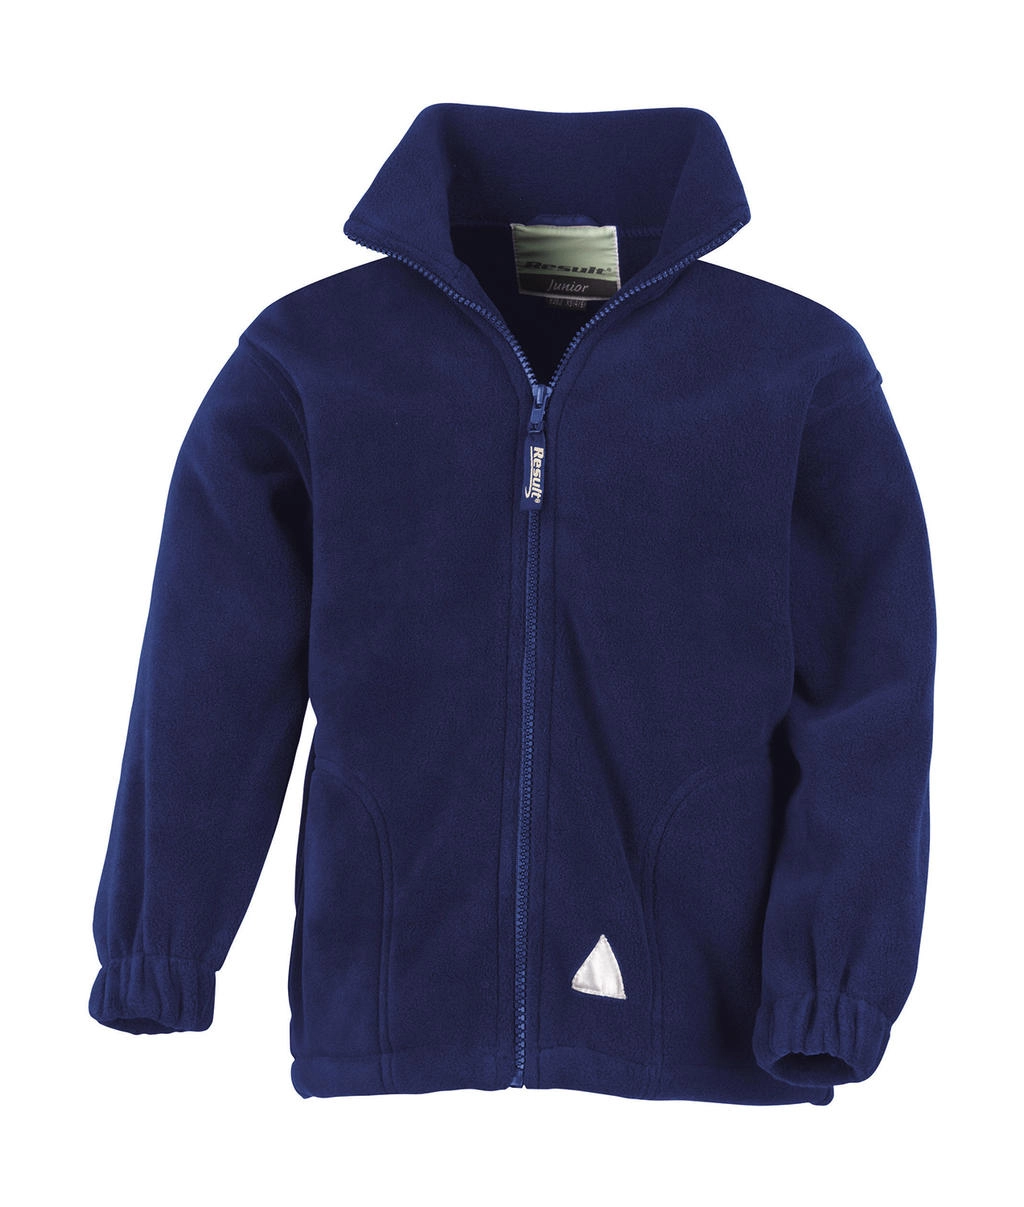 Kids` Fleece Jacket zum Besticken und Bedrucken in der Farbe Navy mit Ihren Logo, Schriftzug oder Motiv.